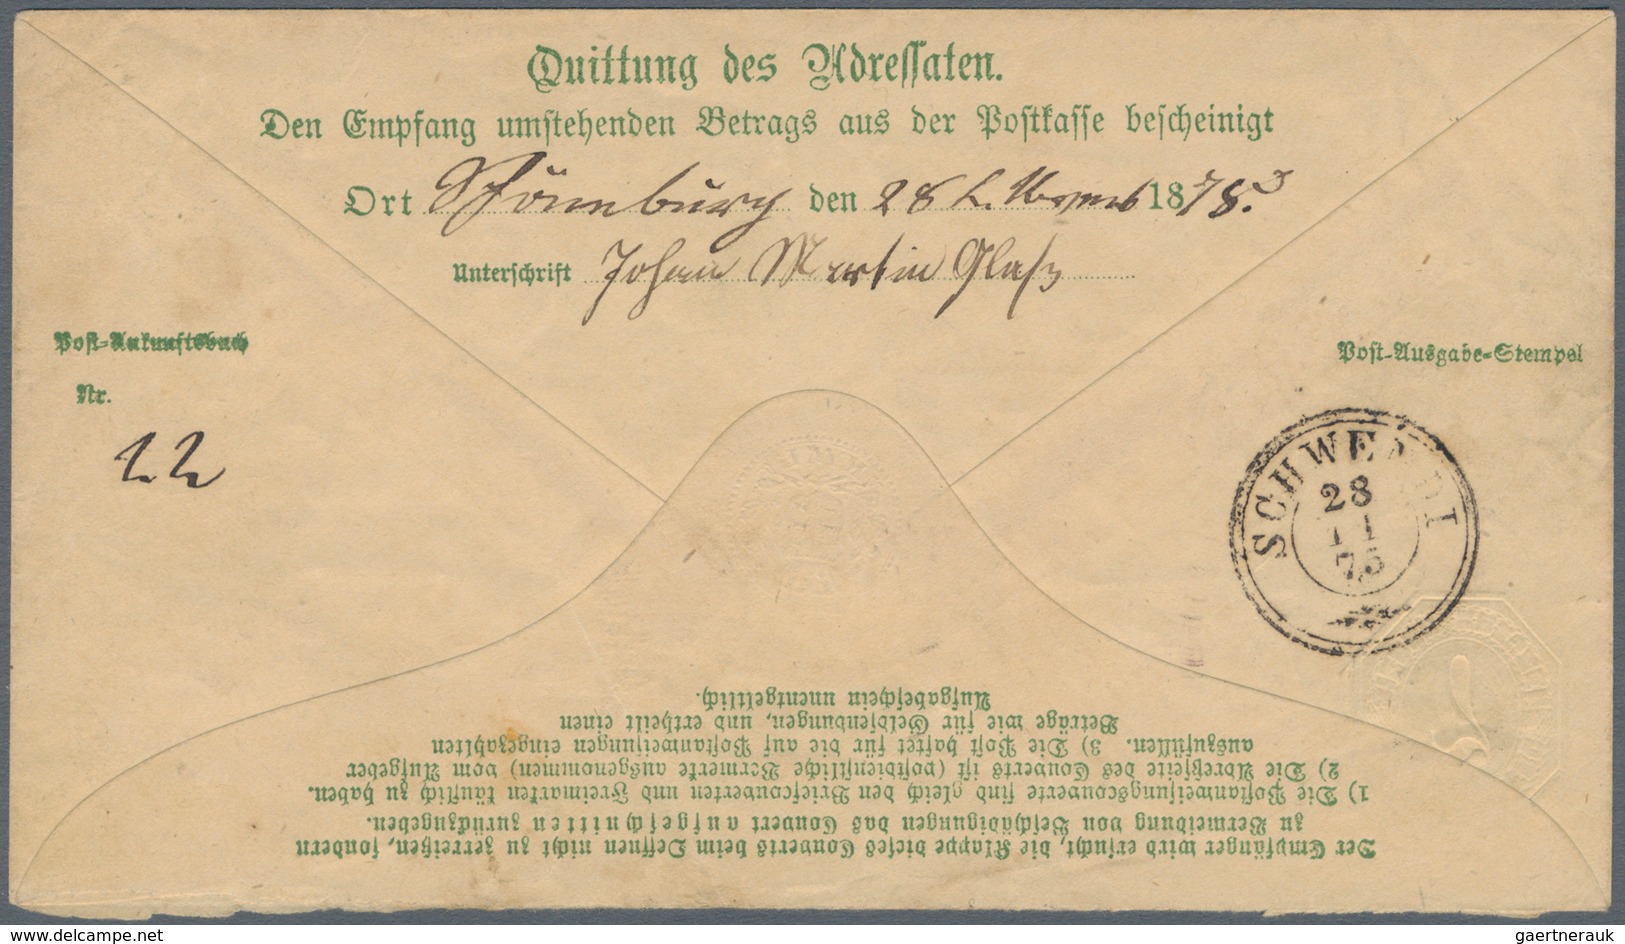 Württemberg - Postanweisungen: 1875 Zwei Postanweisungs-Umschläge 7 Kreuzer mit Zusatzfrankaturen 5